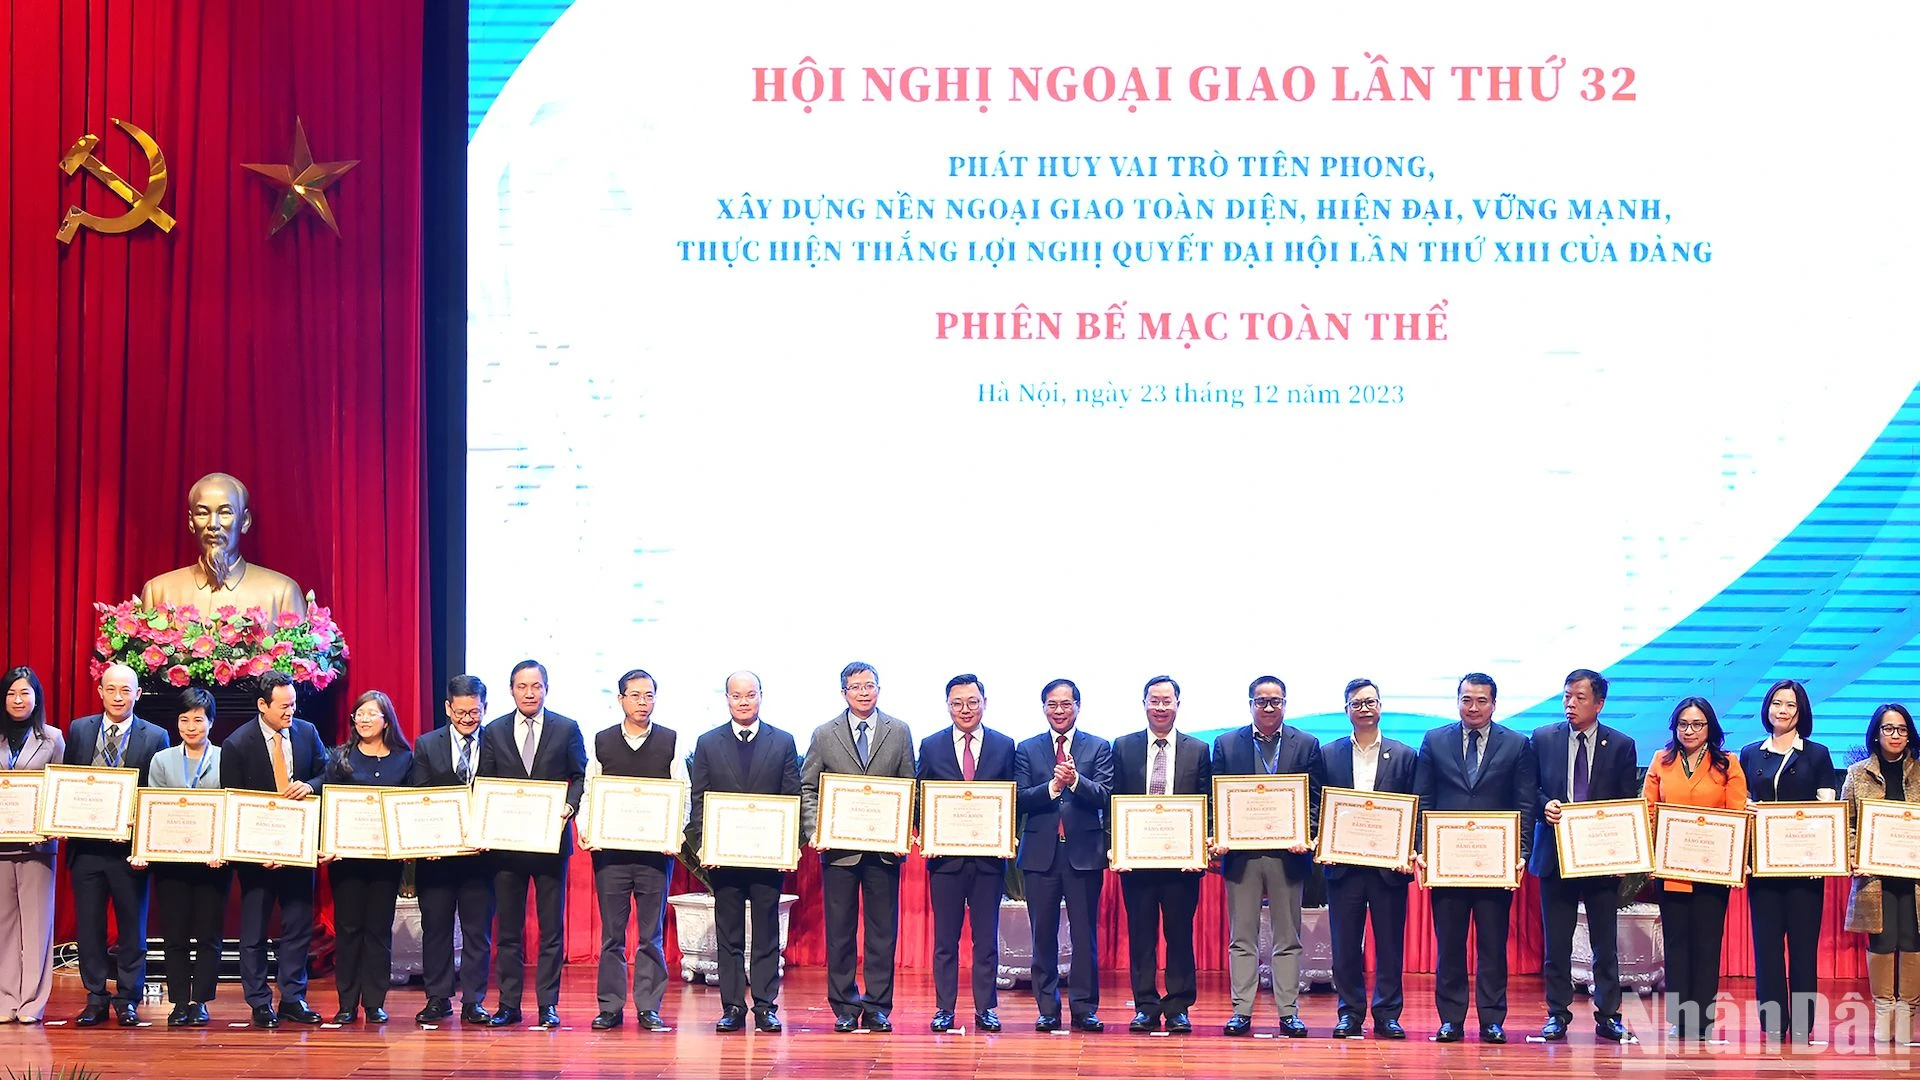 越南外交部部长裴青山向在对外任务和建设外交部门中取得优异成绩的集体和个人授予奖状。